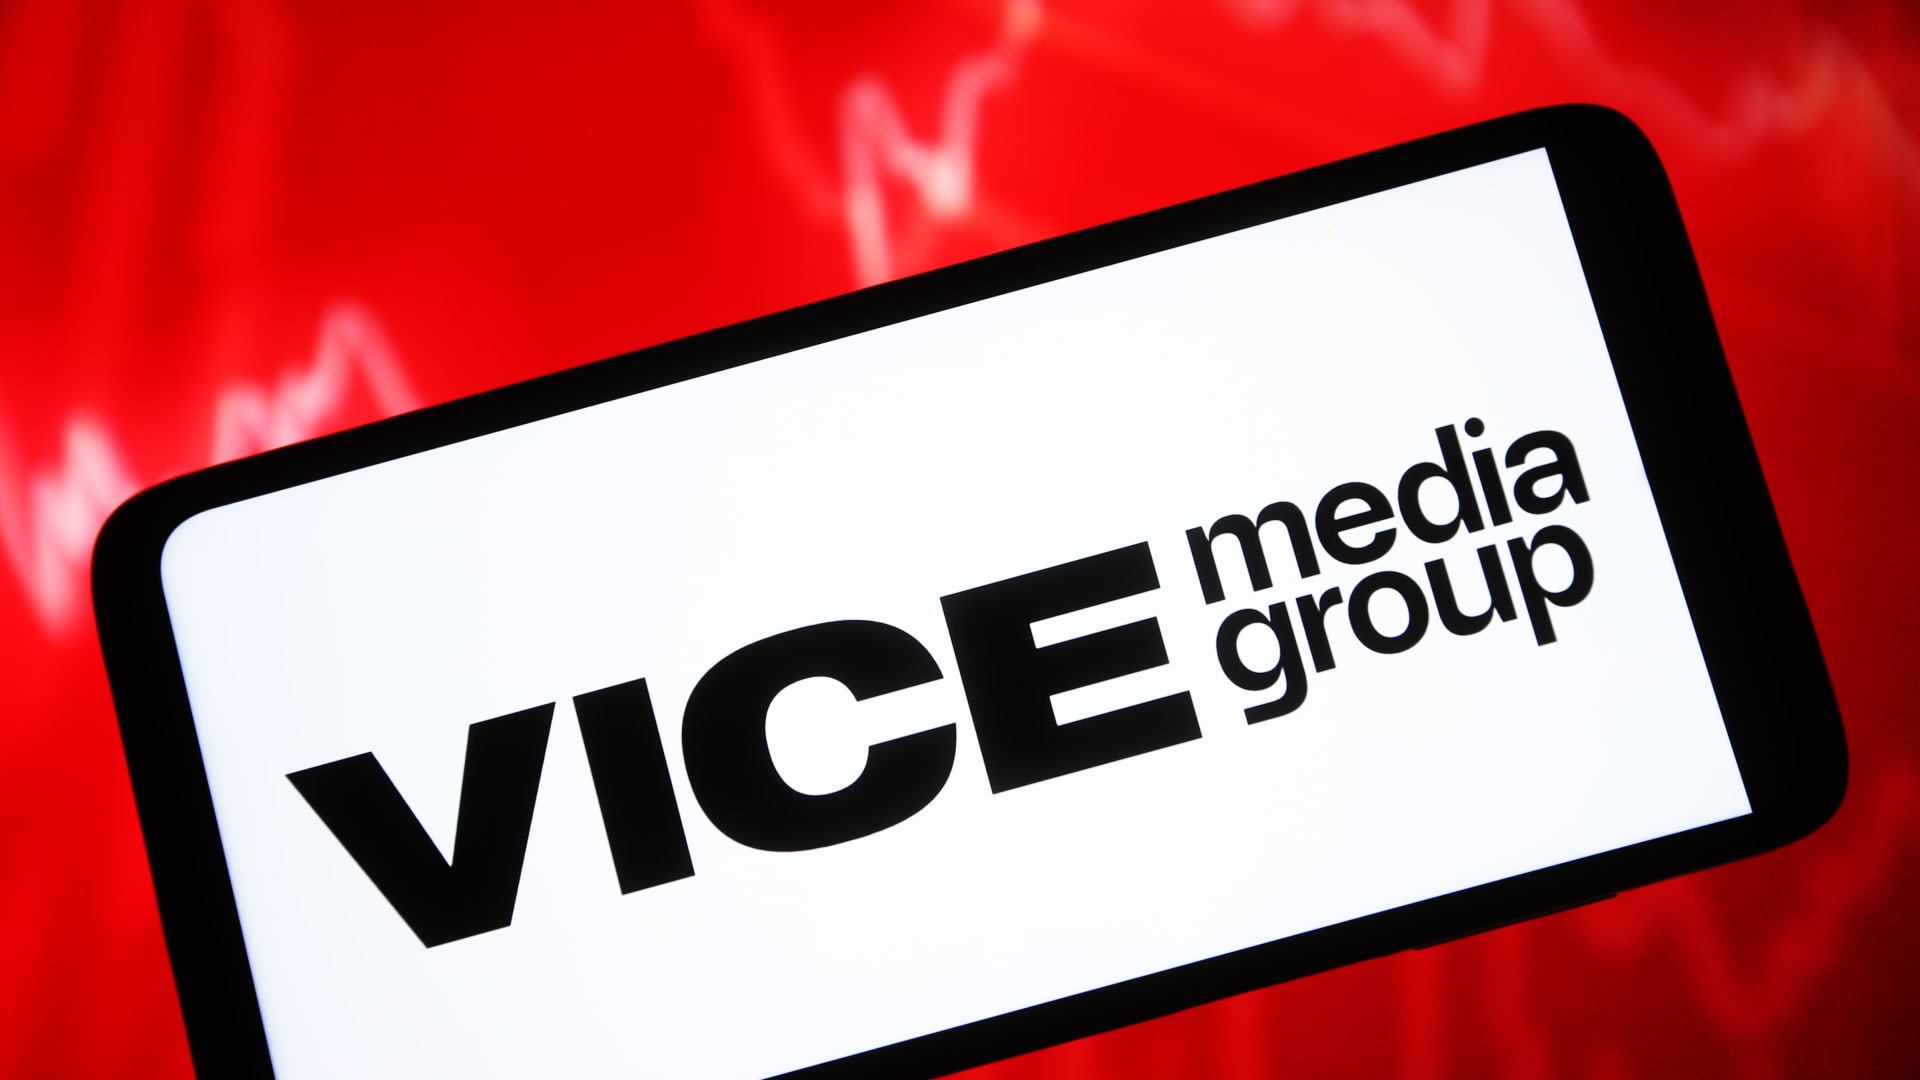 GoDigital wants to buy Vice Media